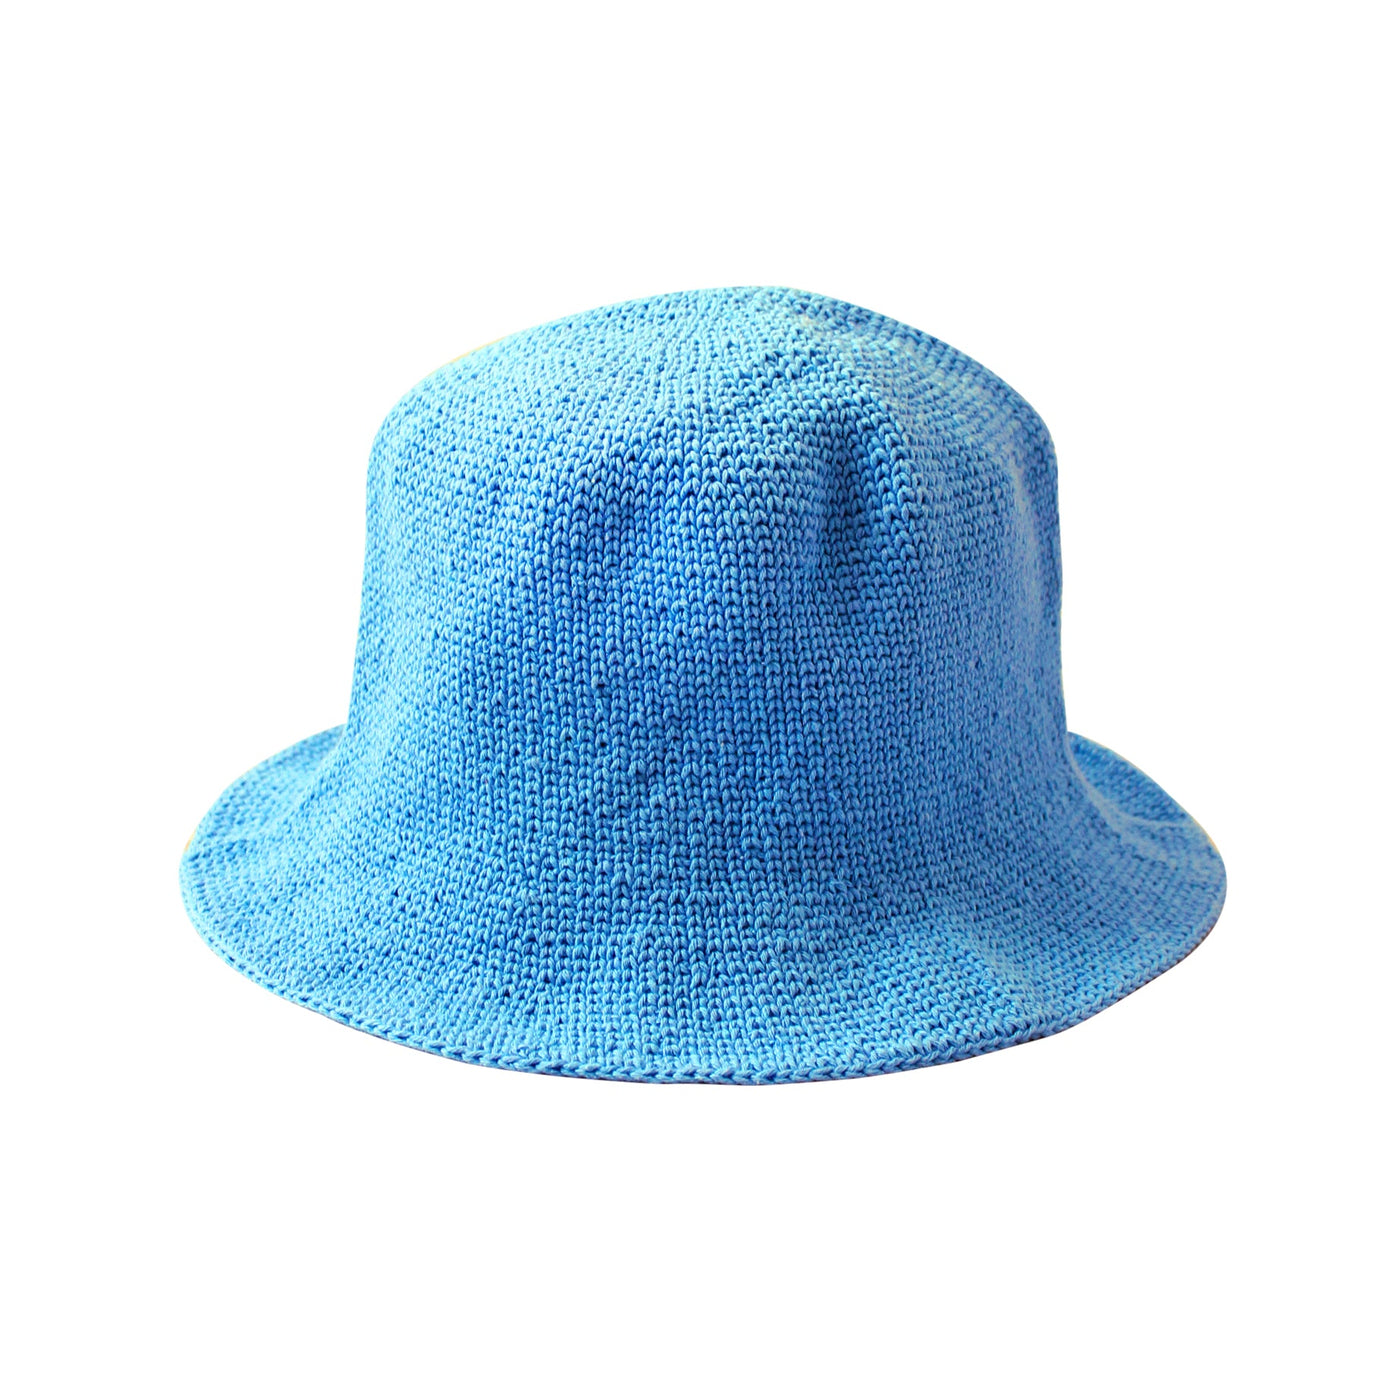 FLORETTE Crochet Bucket Hat, in Periwinkle Blue by BrunnaCo